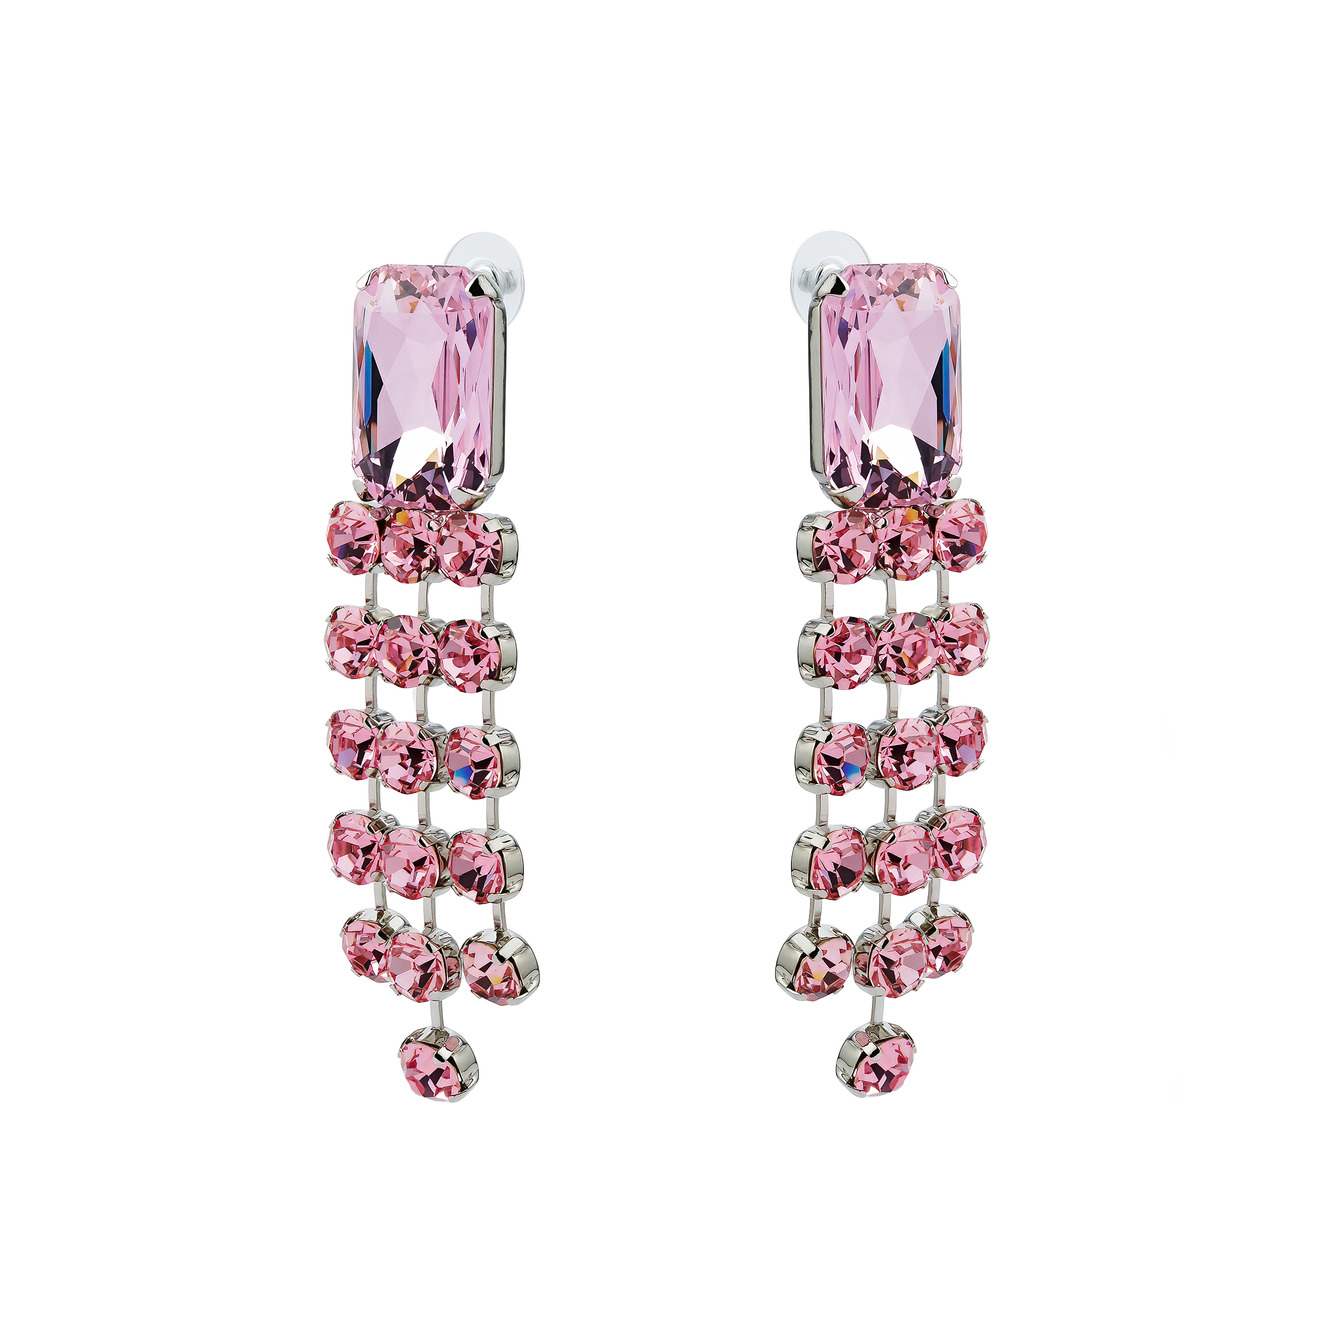 Herald Percy Серьги с подвесками и крупным розовым кристаллом herald percy круглые серебристые серьги с крупным кристаллом